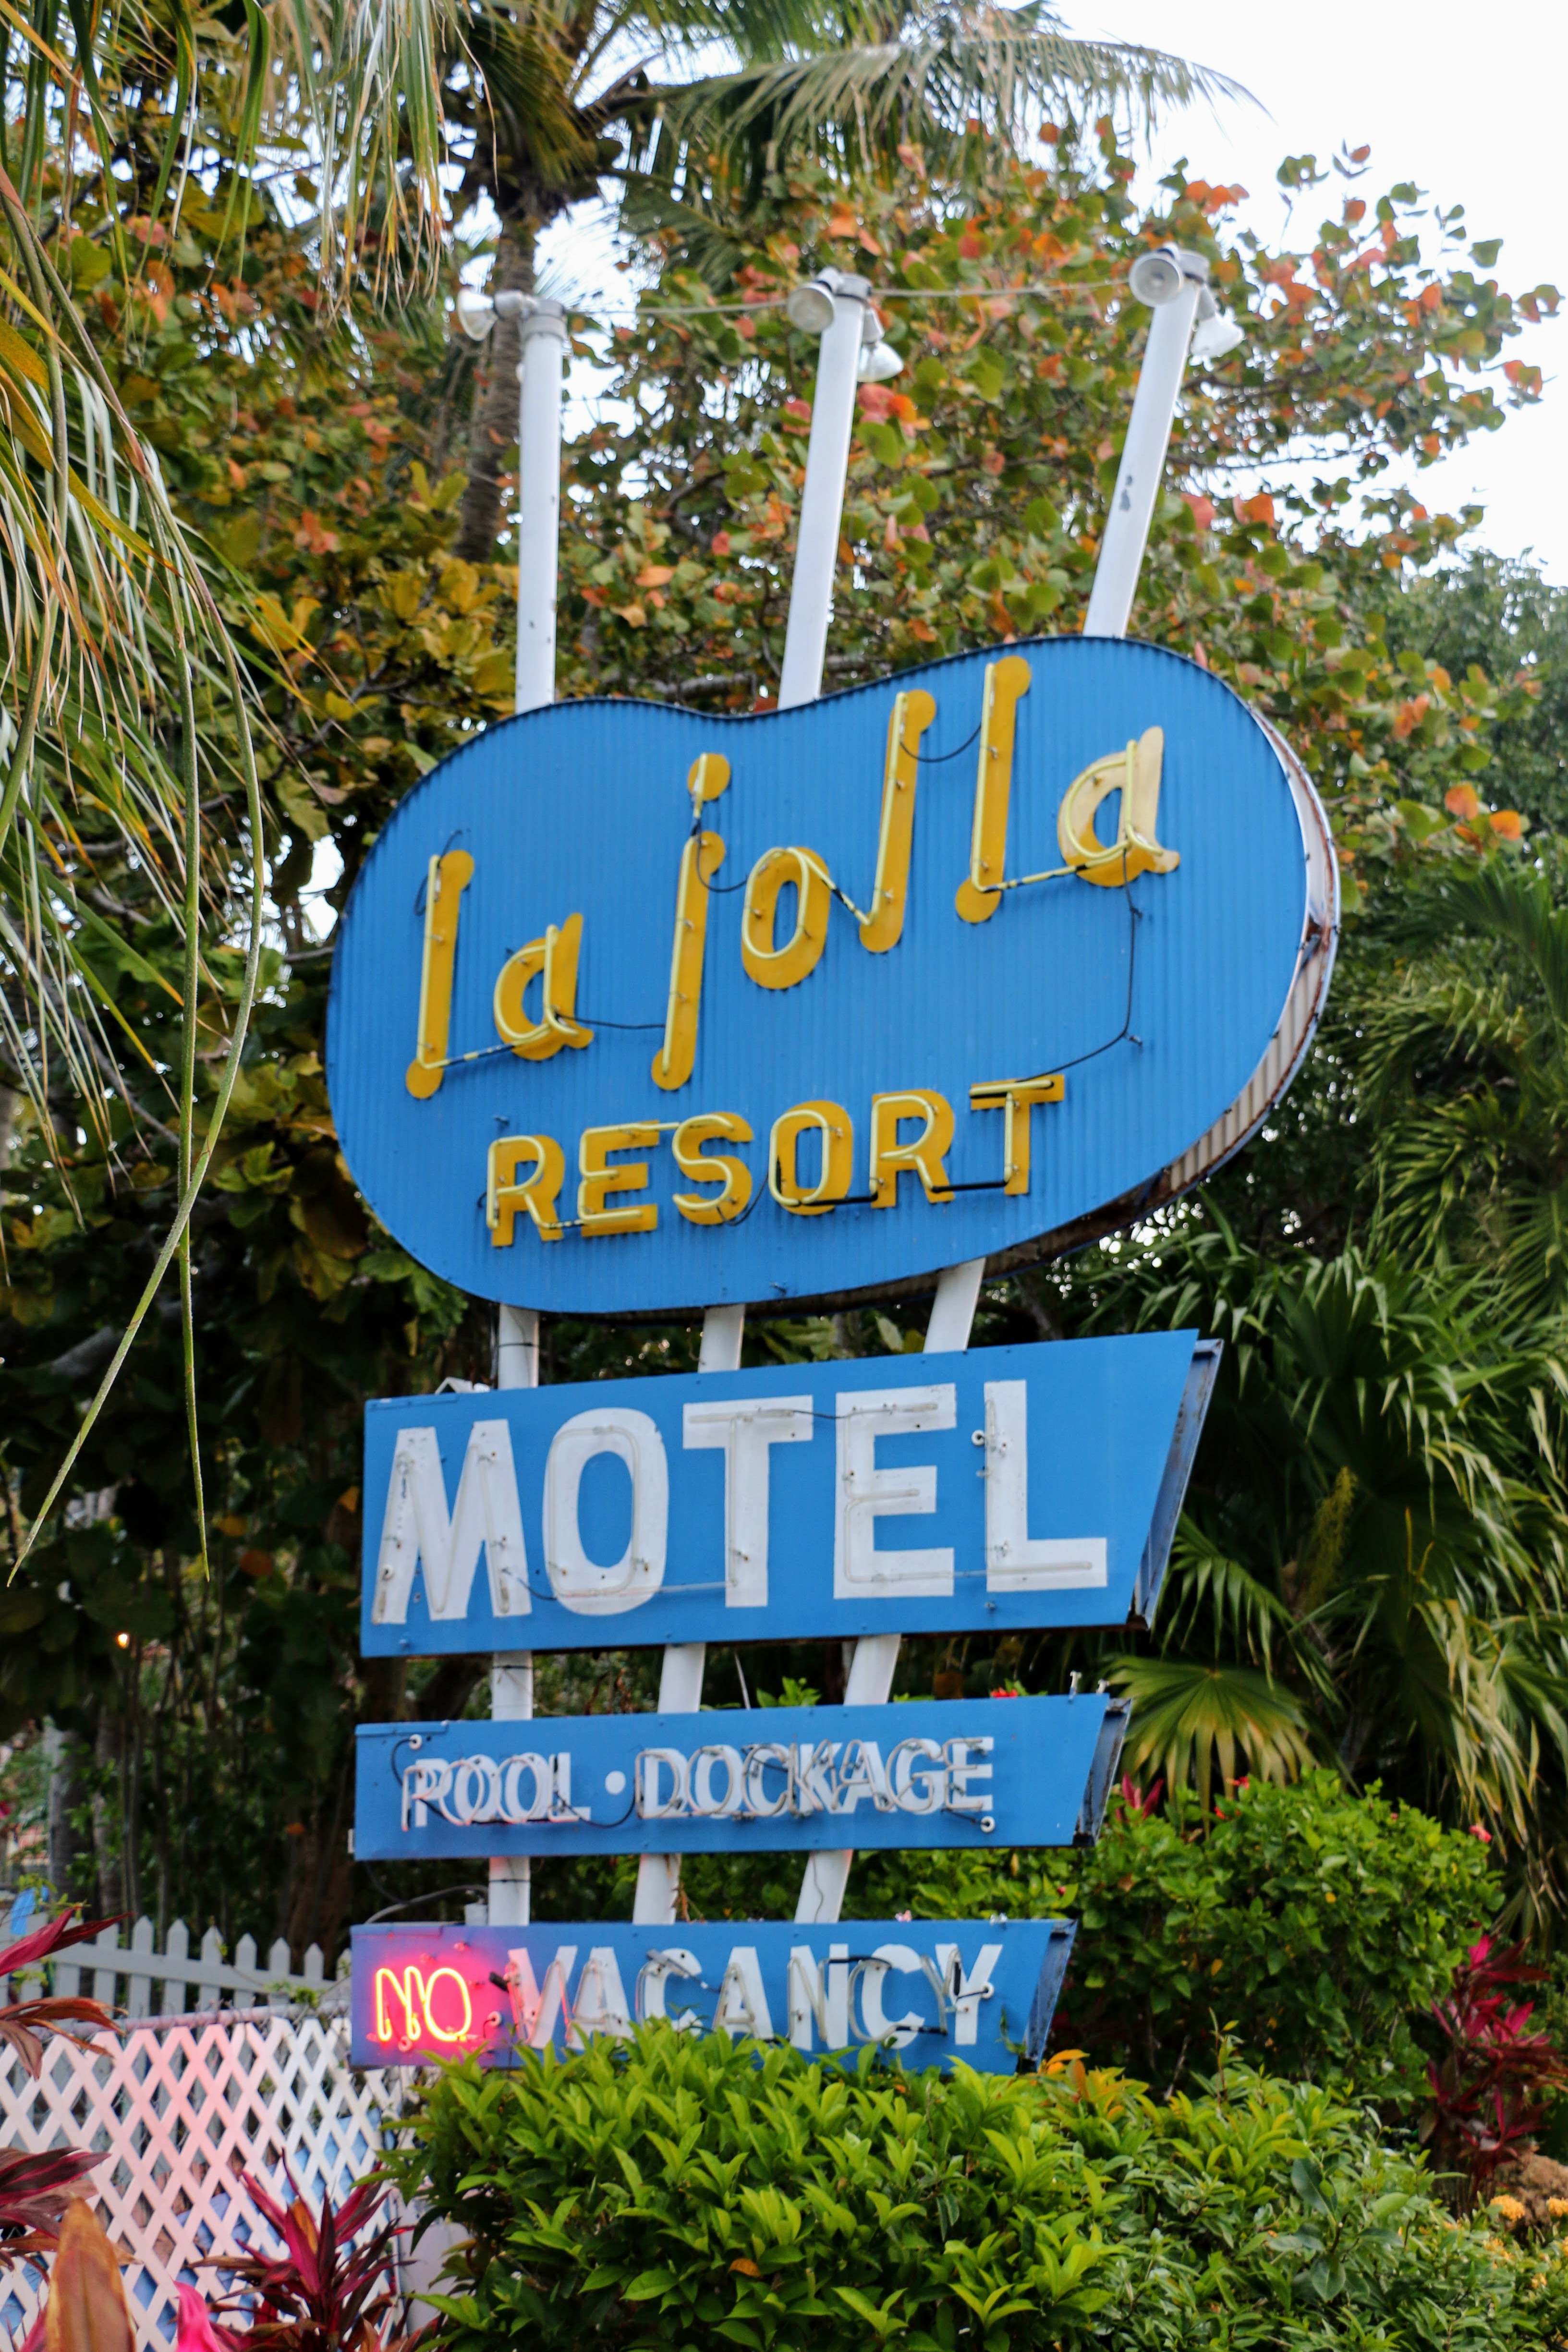 La Jolla Resort Motel sign